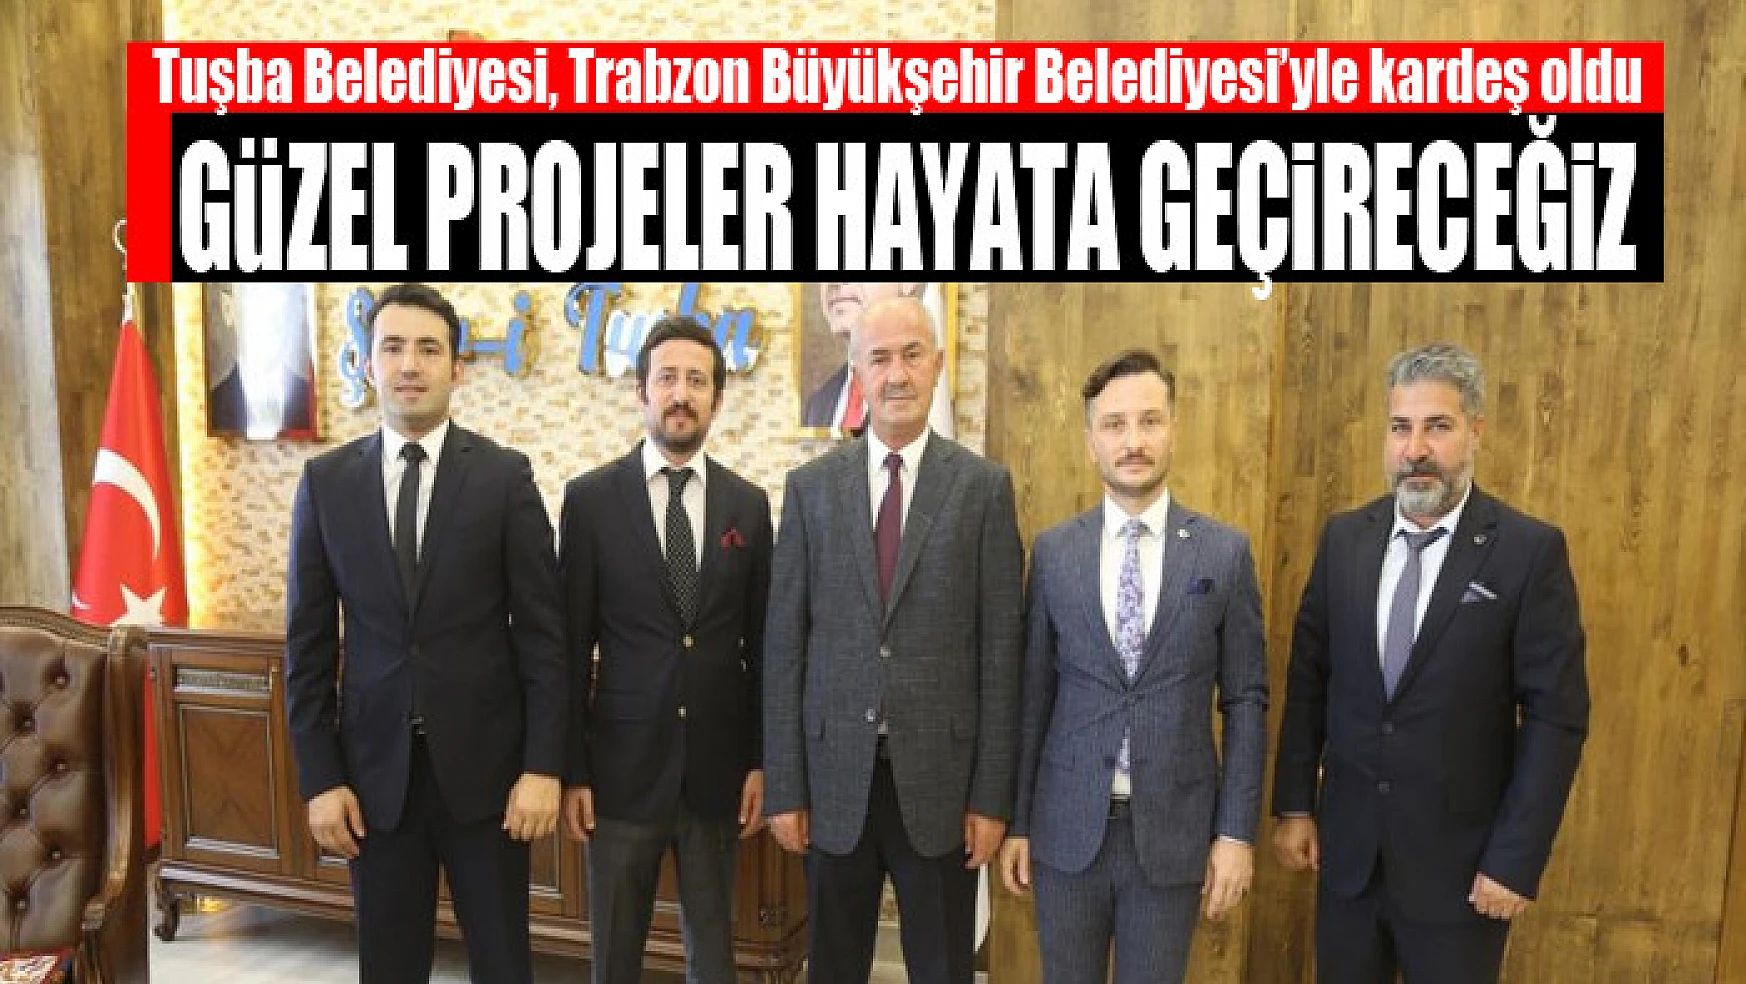 Tuşba Belediyesi, Trabzon Büyükşehir Belediyesi'yle kardeş oldu